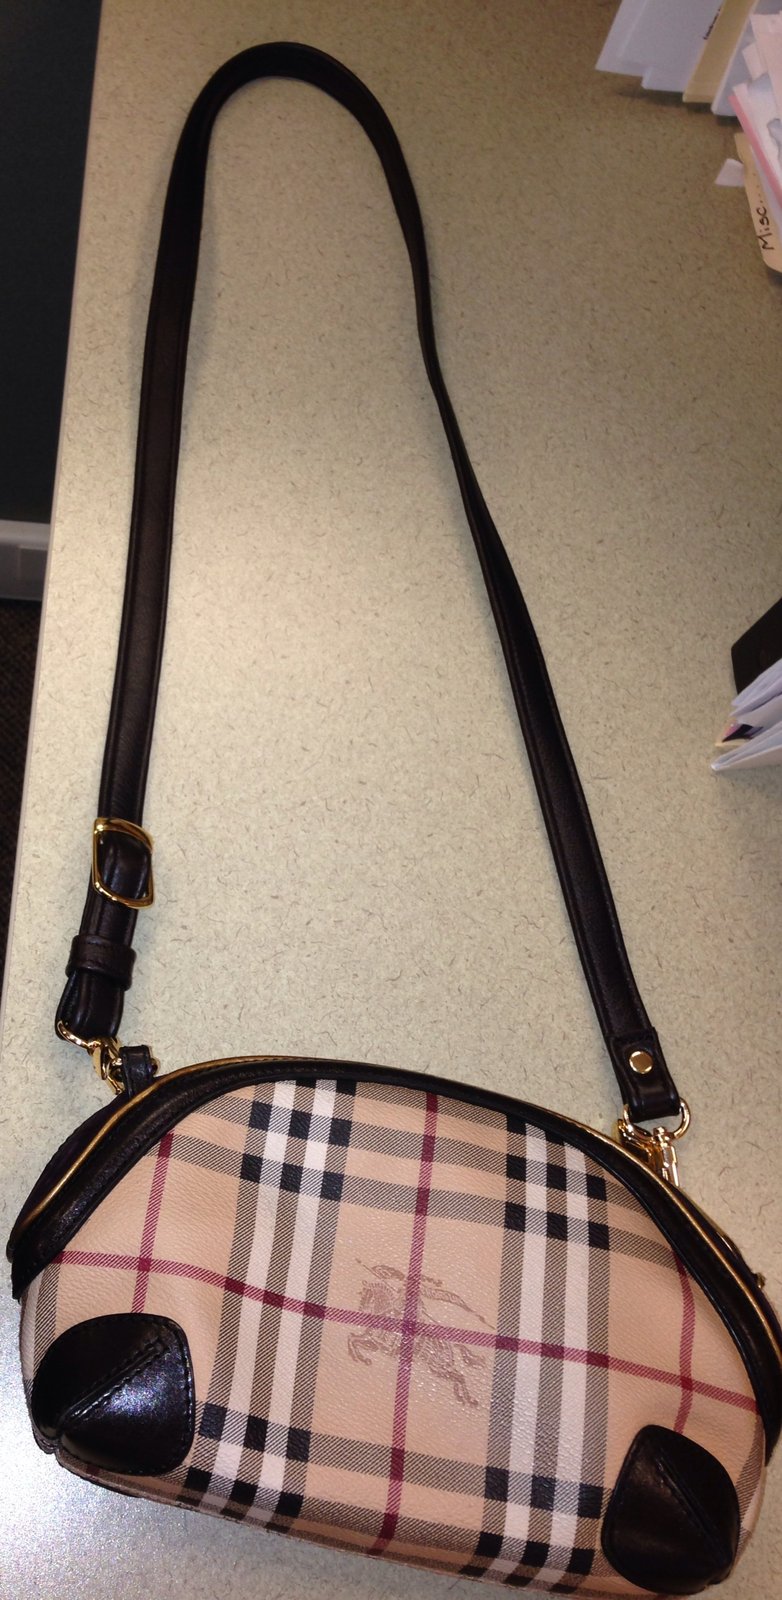 burberry replica handbags usa